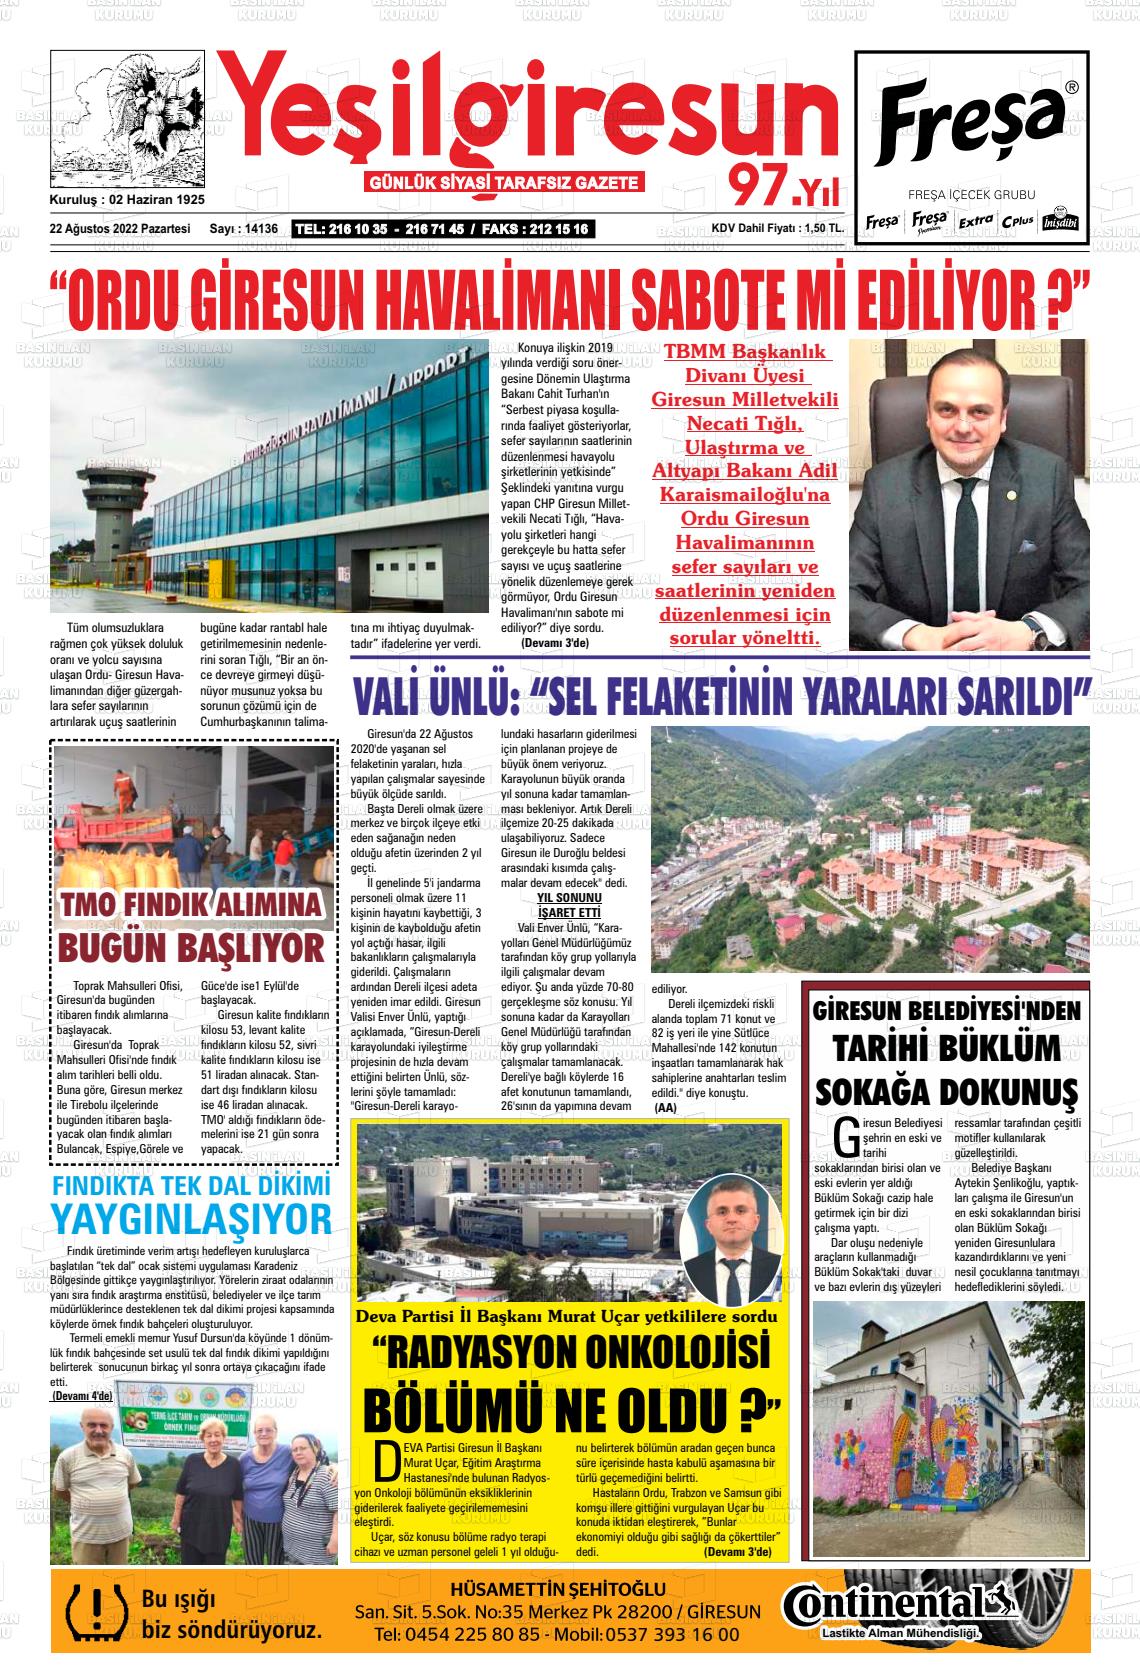 22 Ağustos 2022 Yeşil Giresun Gazete Manşeti